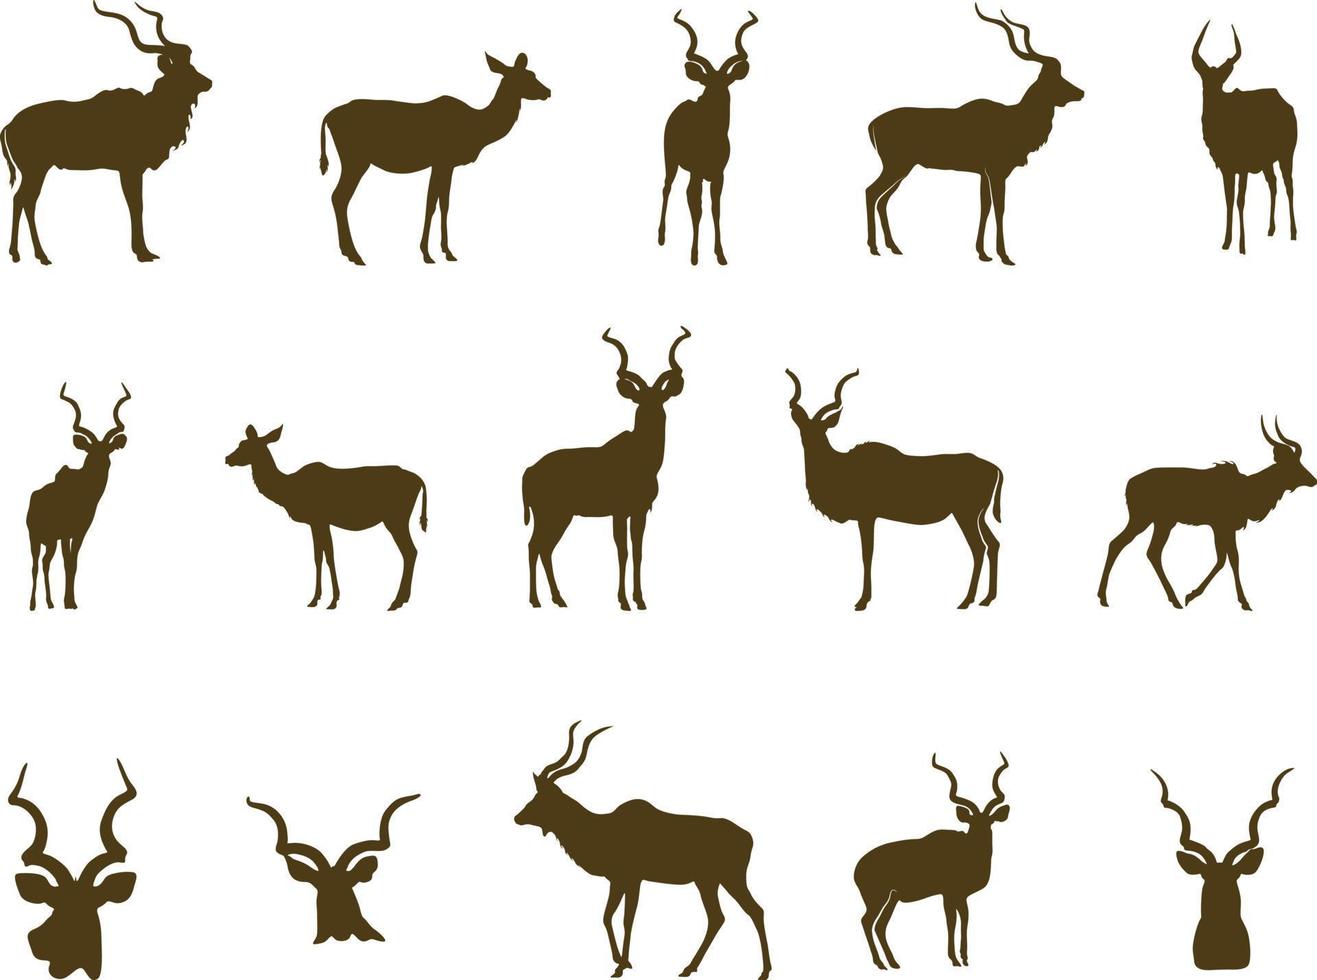 Kudu silueta, cornamenta silueta, Kudu cabeza siluetas vector